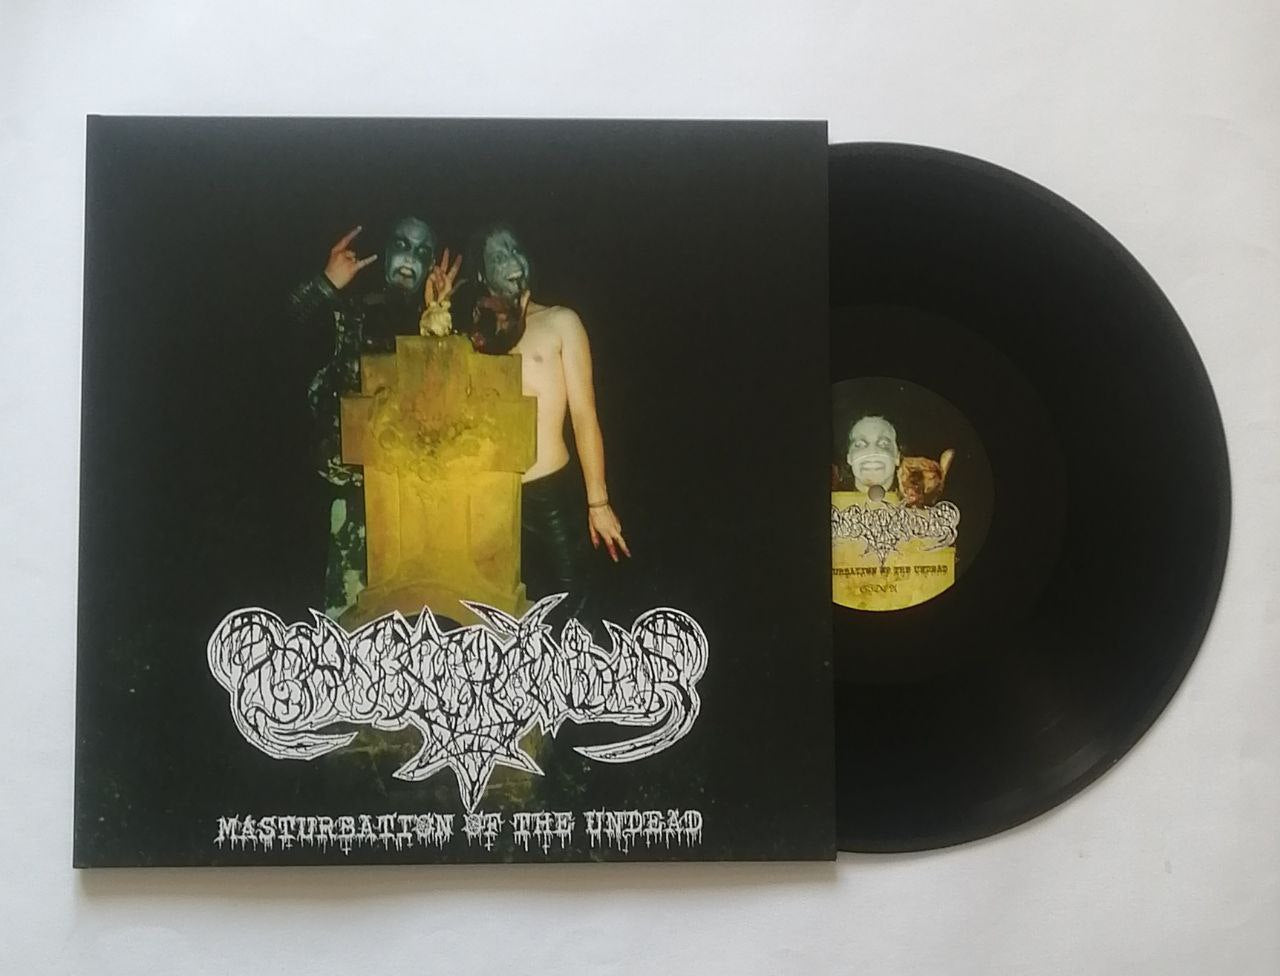 Grabschänder (Ger) "Masturbation of the Undead" - 12" LP